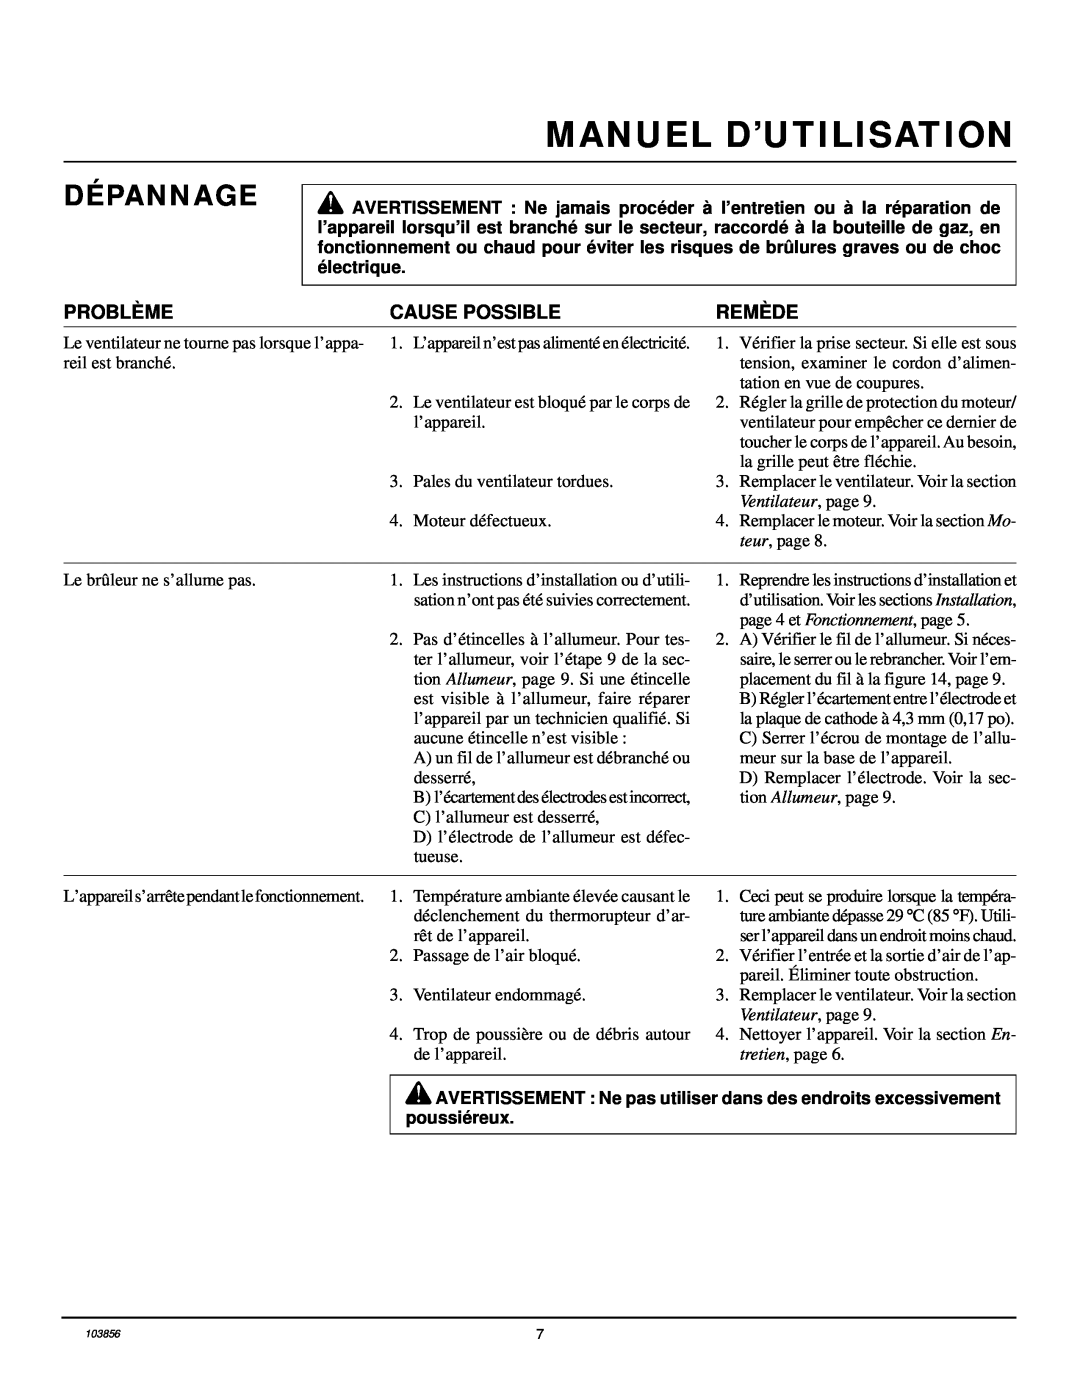 Desa RCLP50V owner manual Dépannage, Manuel D’Utilisation, Problème, Cause Possible, Remède, Ventilateur, page 